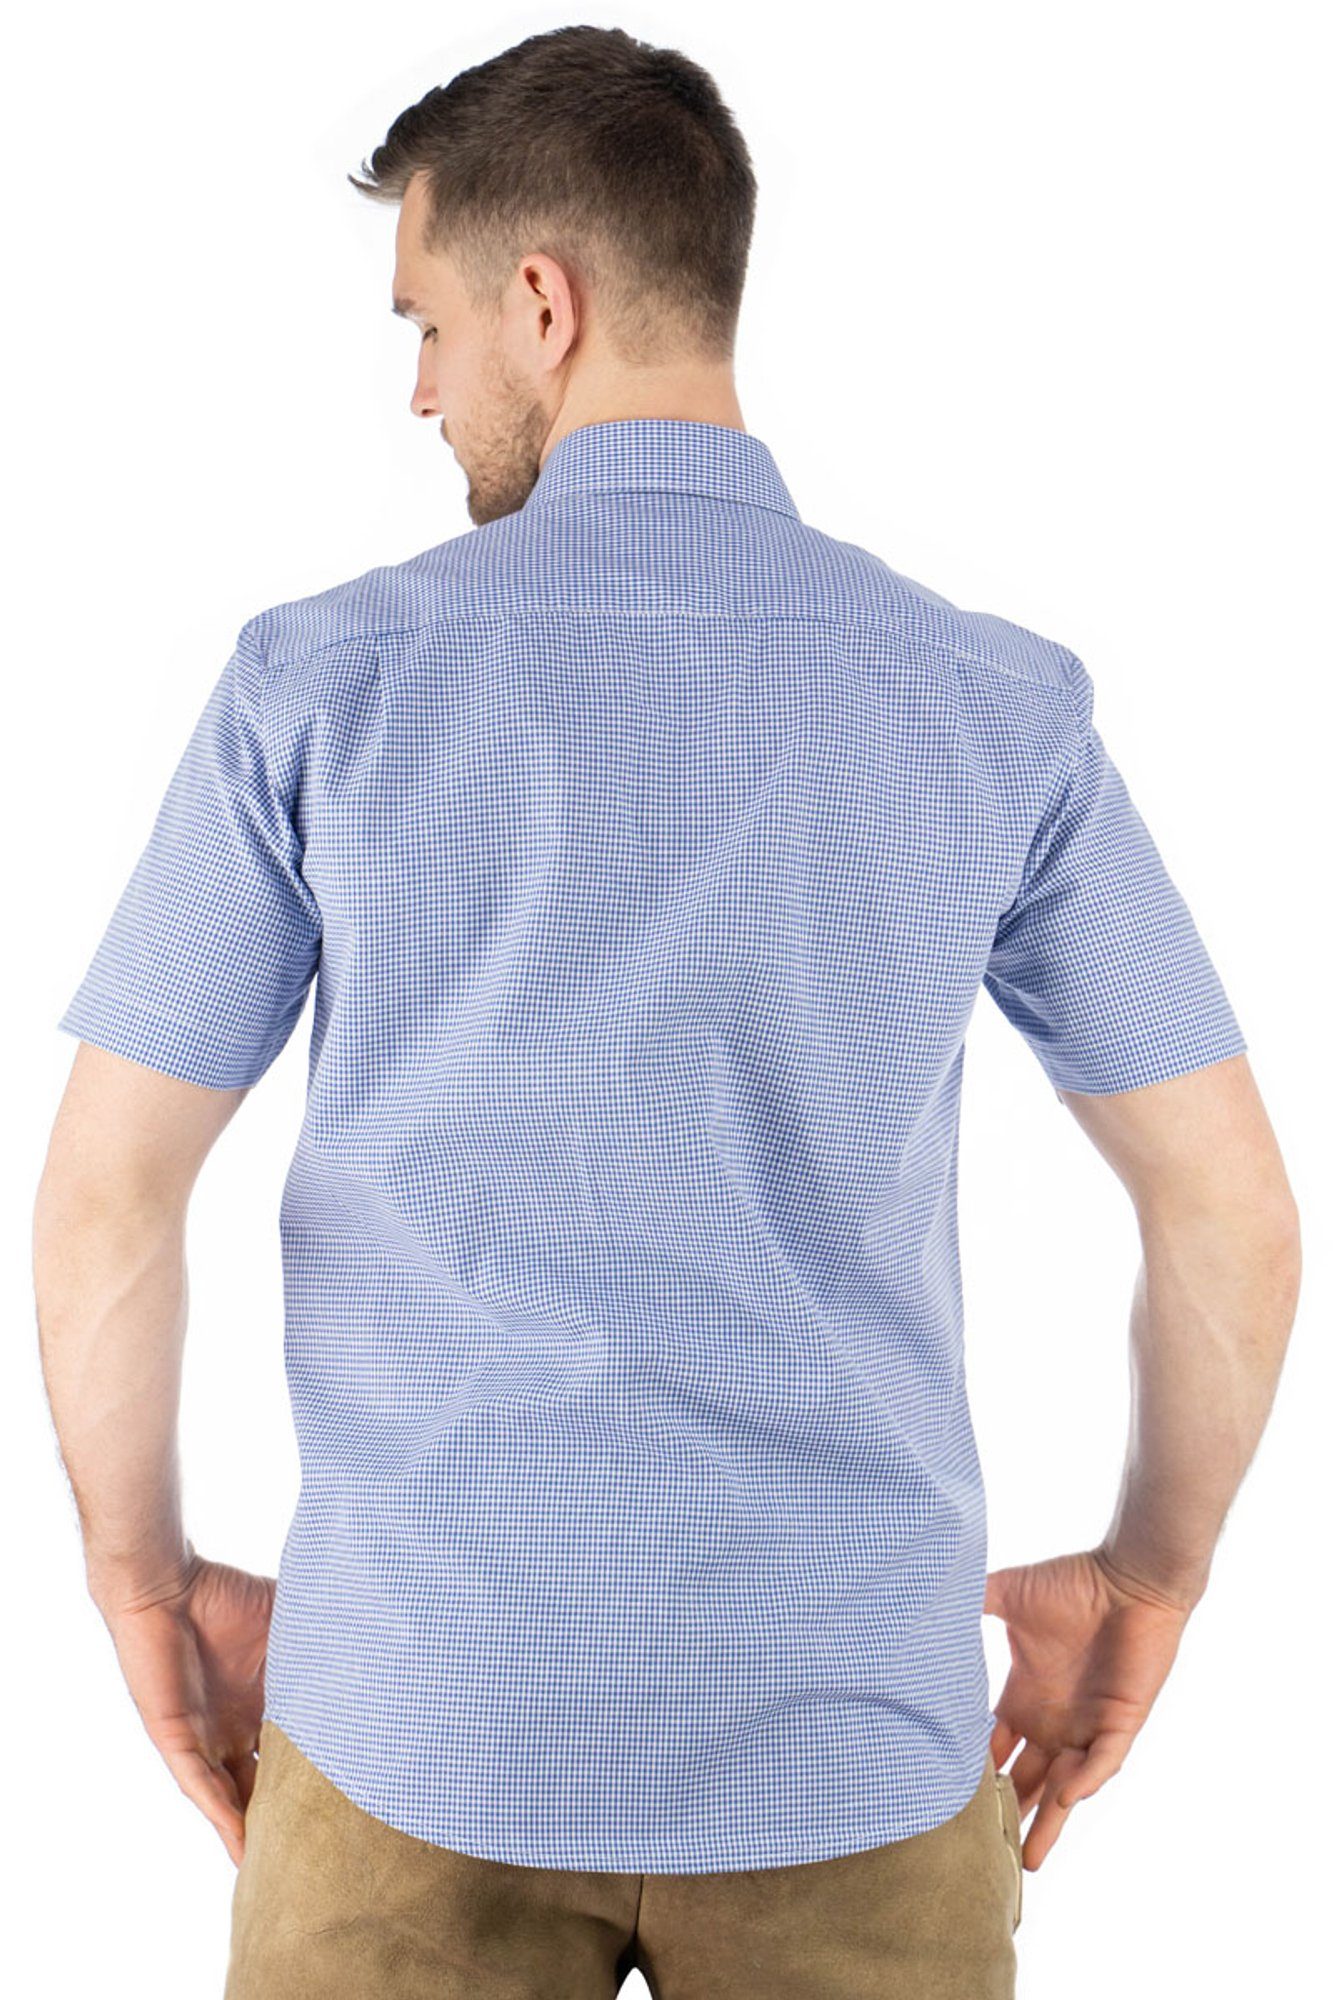 der Weonys Trachtenhemd Knopfleiste OS-Trachten Edelweiß-Stickerei mit auf Paspeltasche, mittelblau Kurzarmhemd